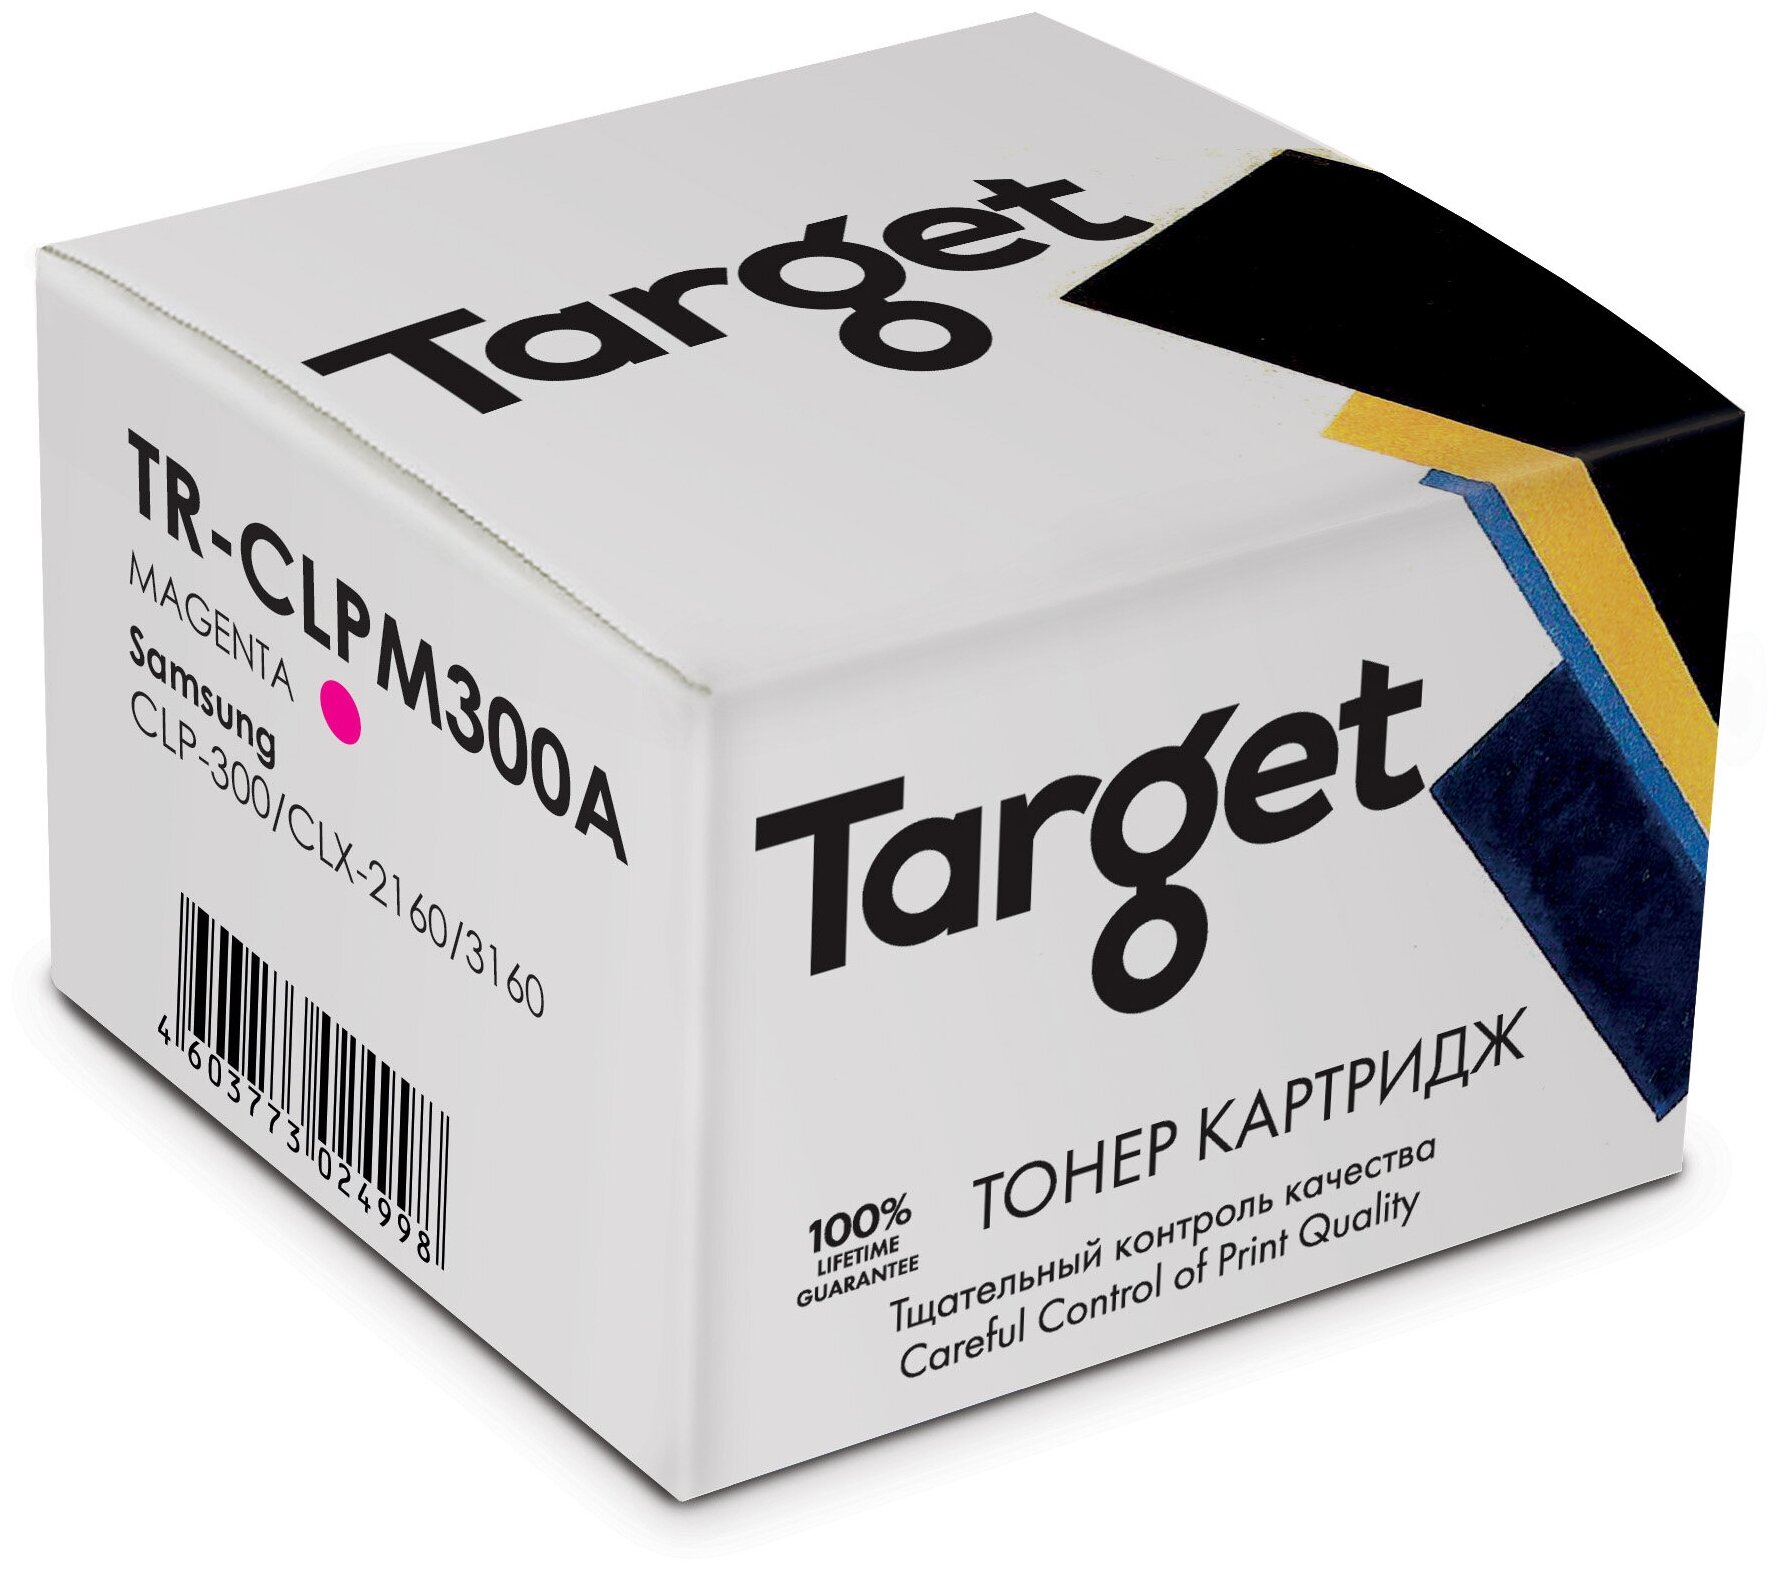 Тонер-картридж Target CLPM300A, пурпурный, для лазерного принтера, совместимый